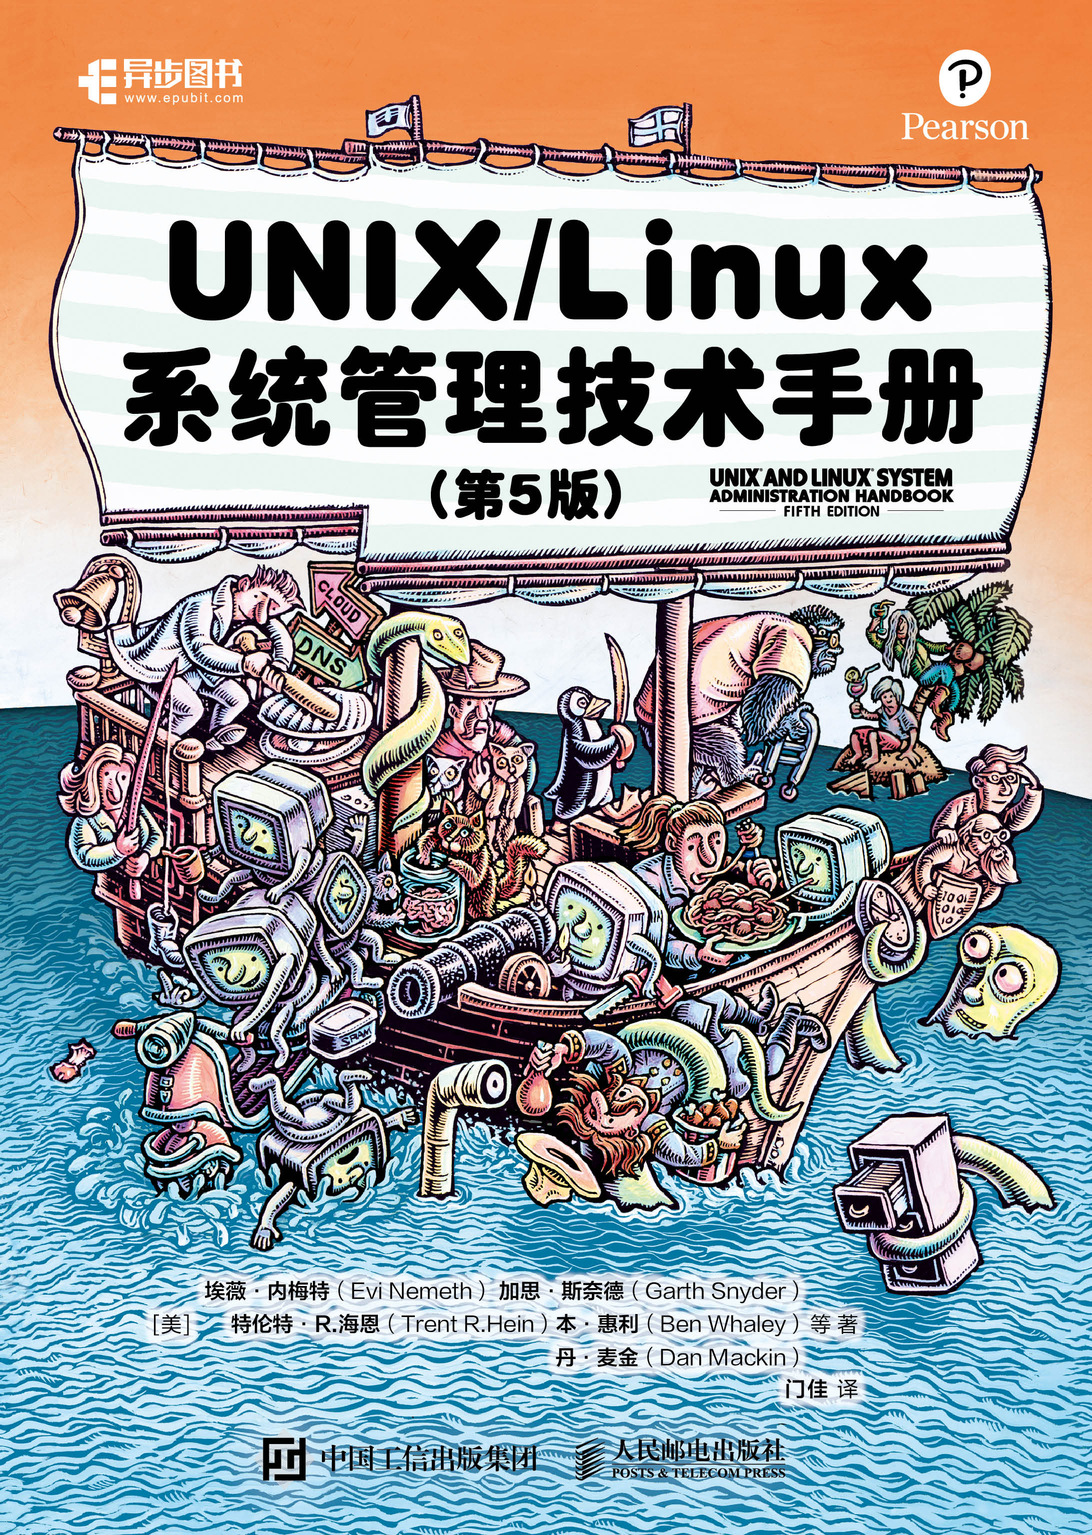 致敬Evi，UNIX/Linux 系统管理技术手册第5版